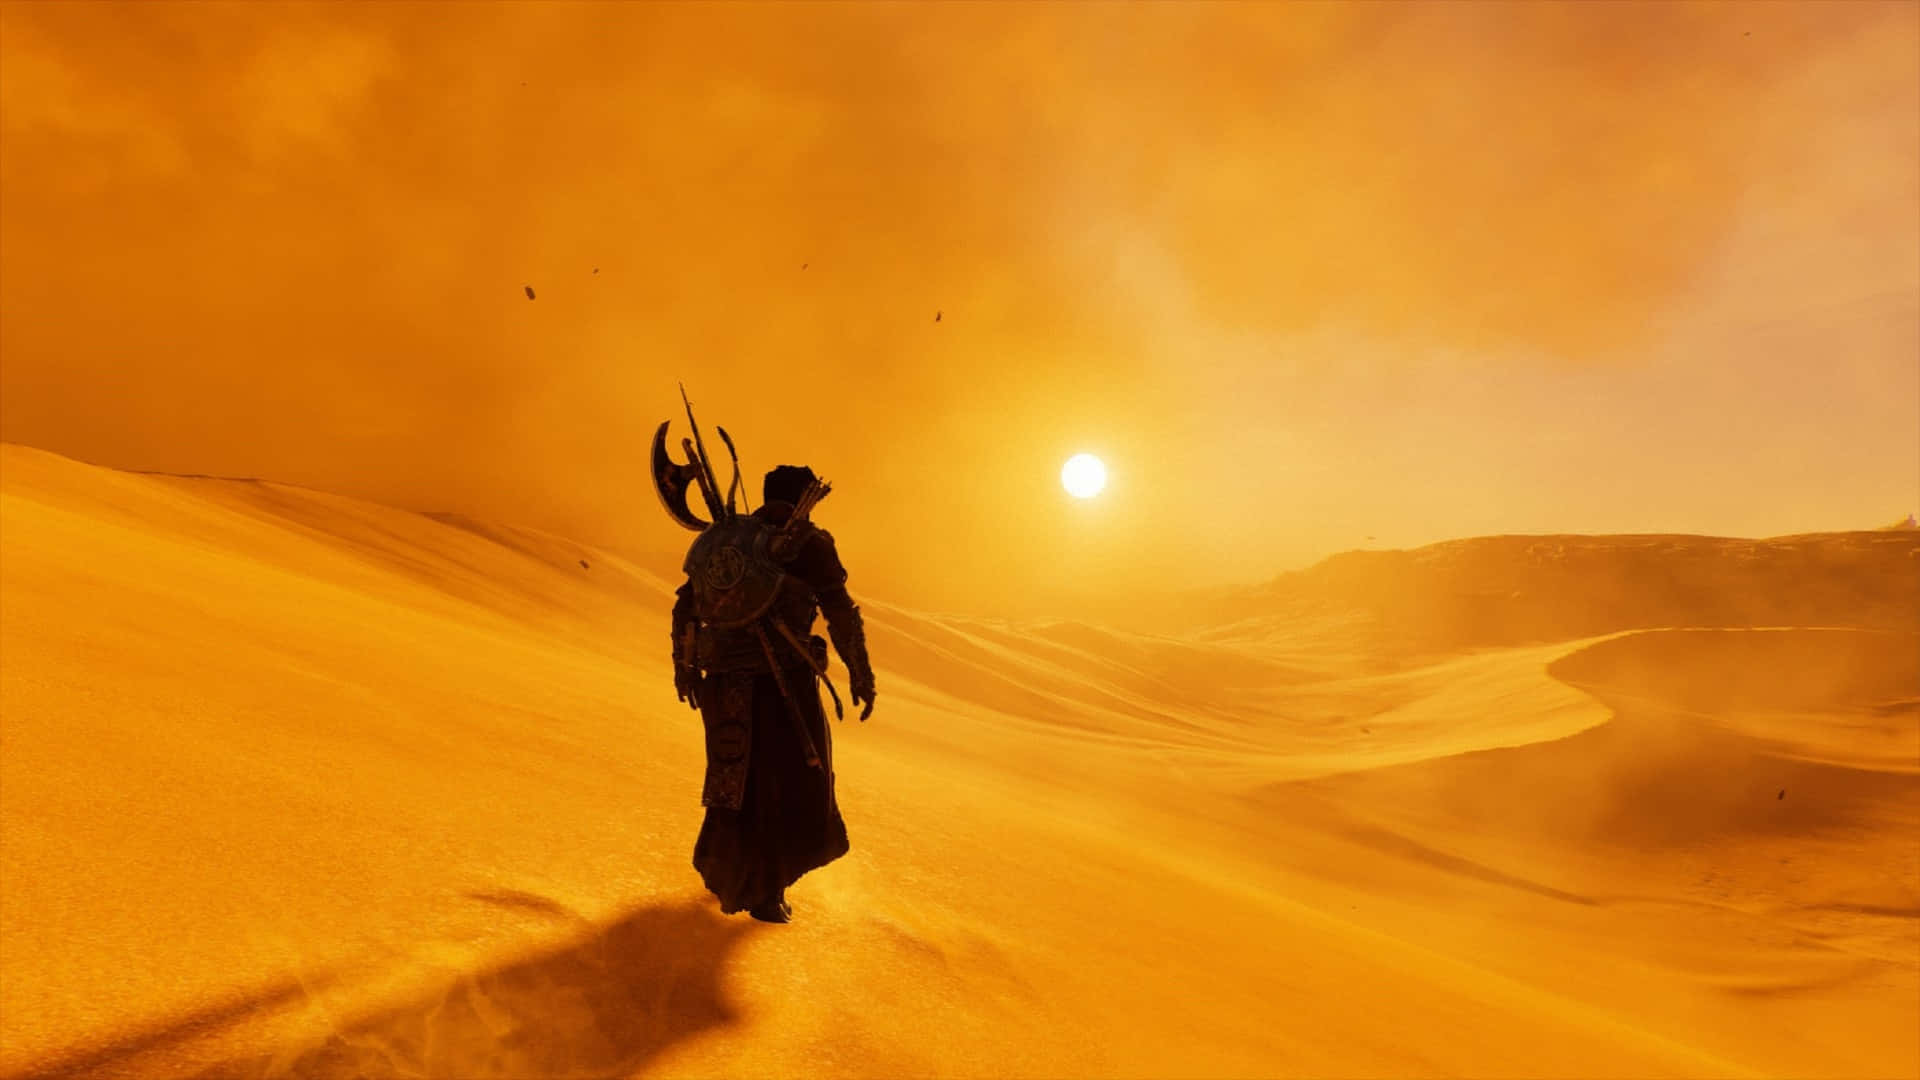 1920x1080bakgrundsbild För Assassin's Creed Odyssey - Sands.